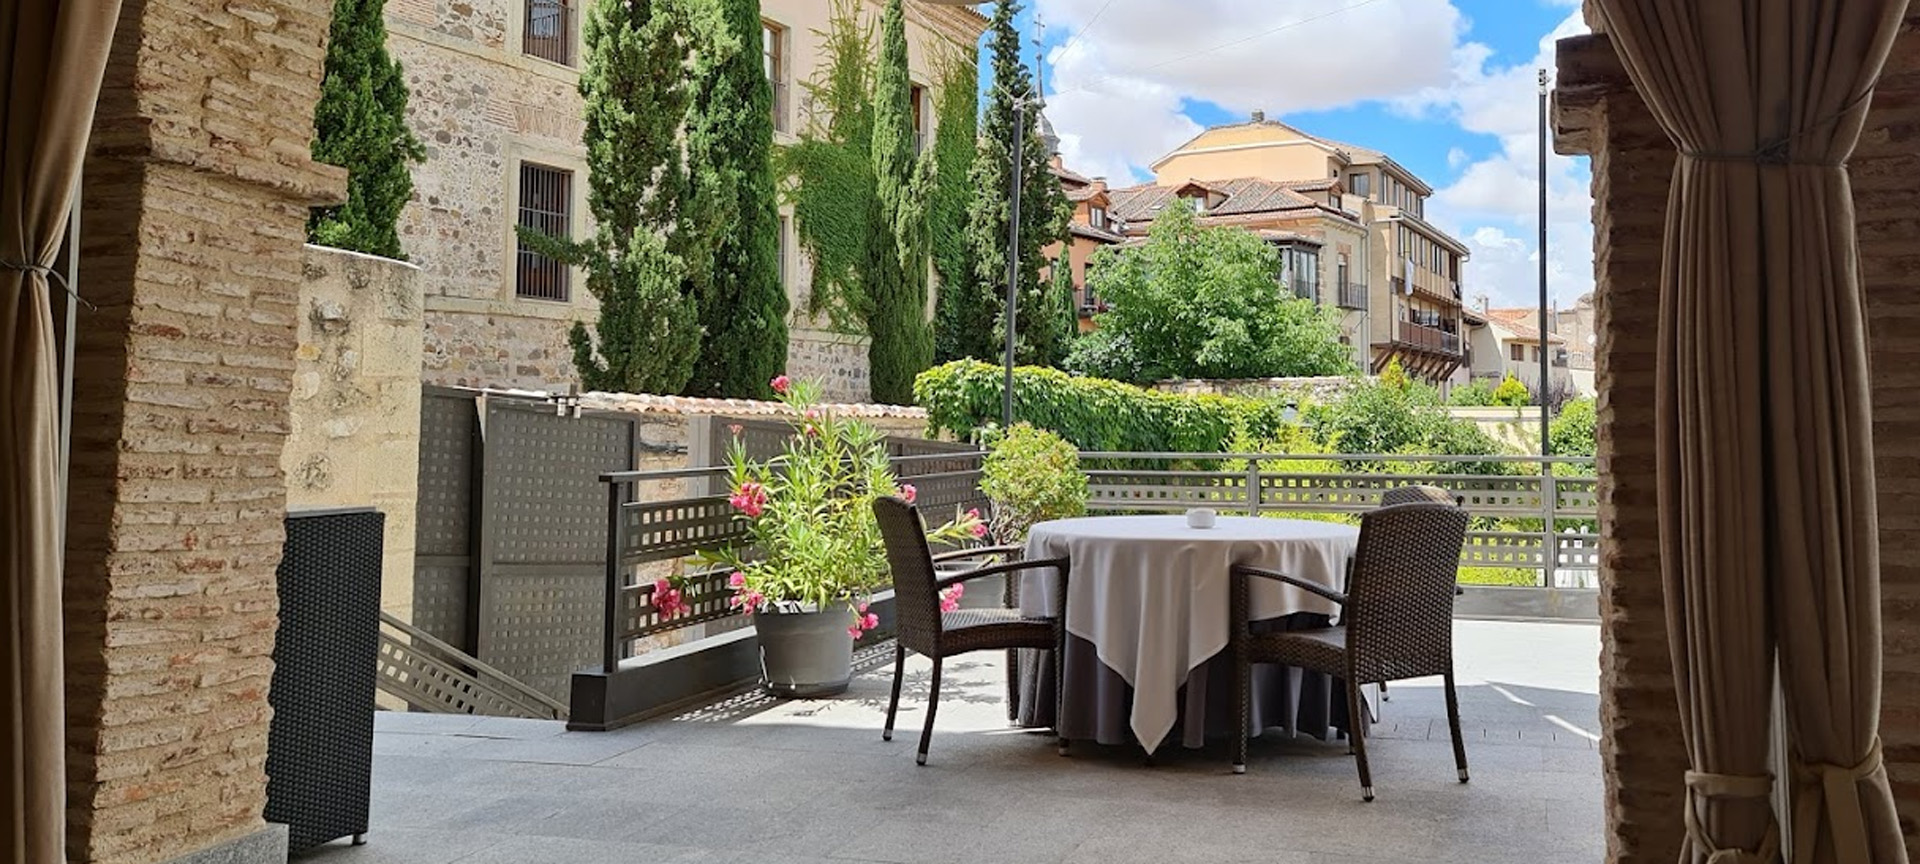 Restaurantes románticos Segovia